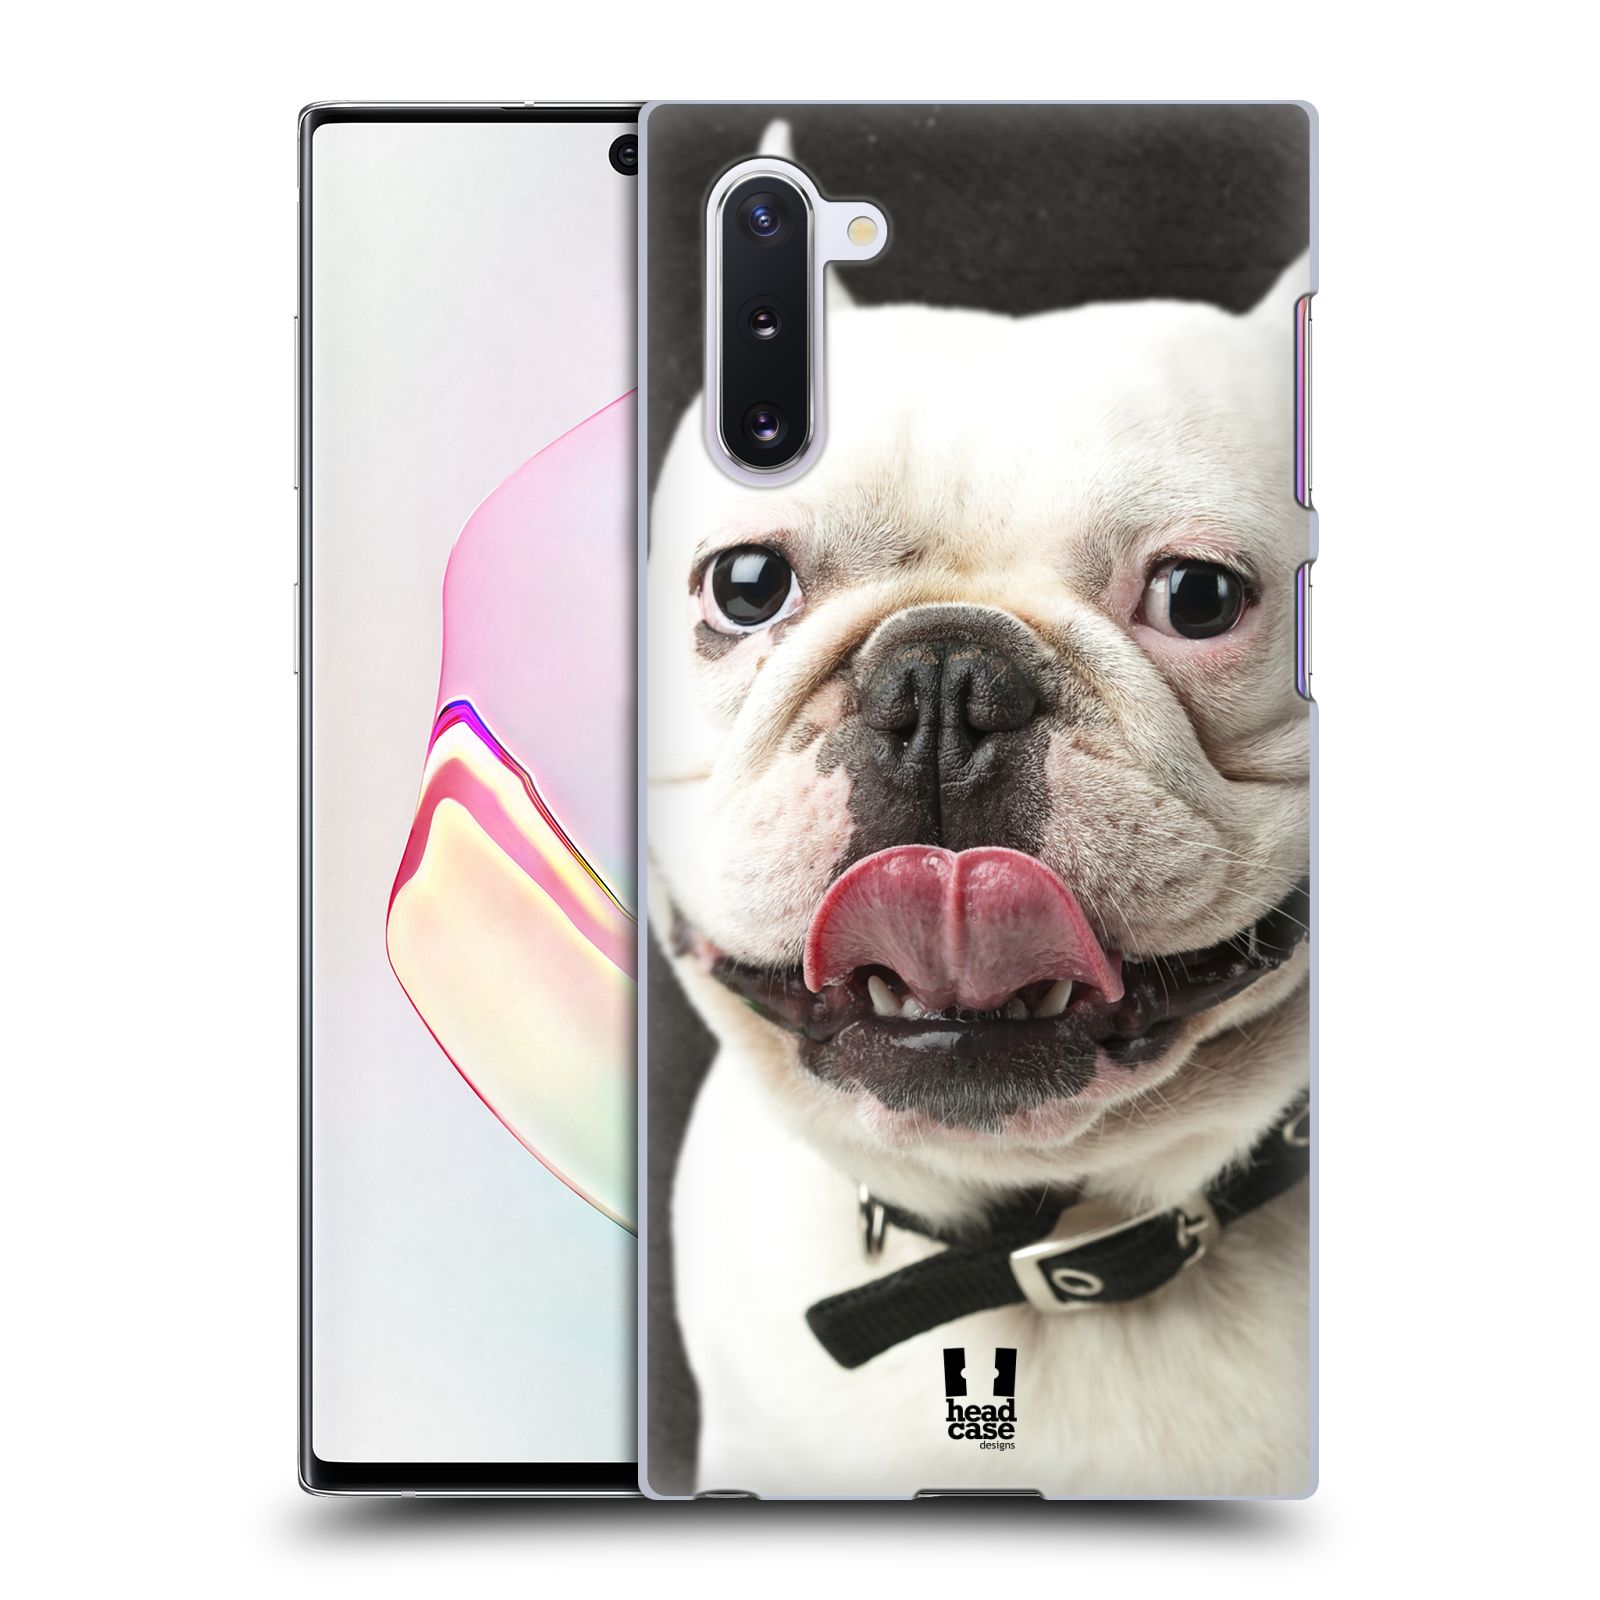 Pouzdro na mobil Samsung Galaxy Note 10 - HEAD CASE - vzor Legrační zvířátka pejsek s vyplazeným jazykem BULDOK